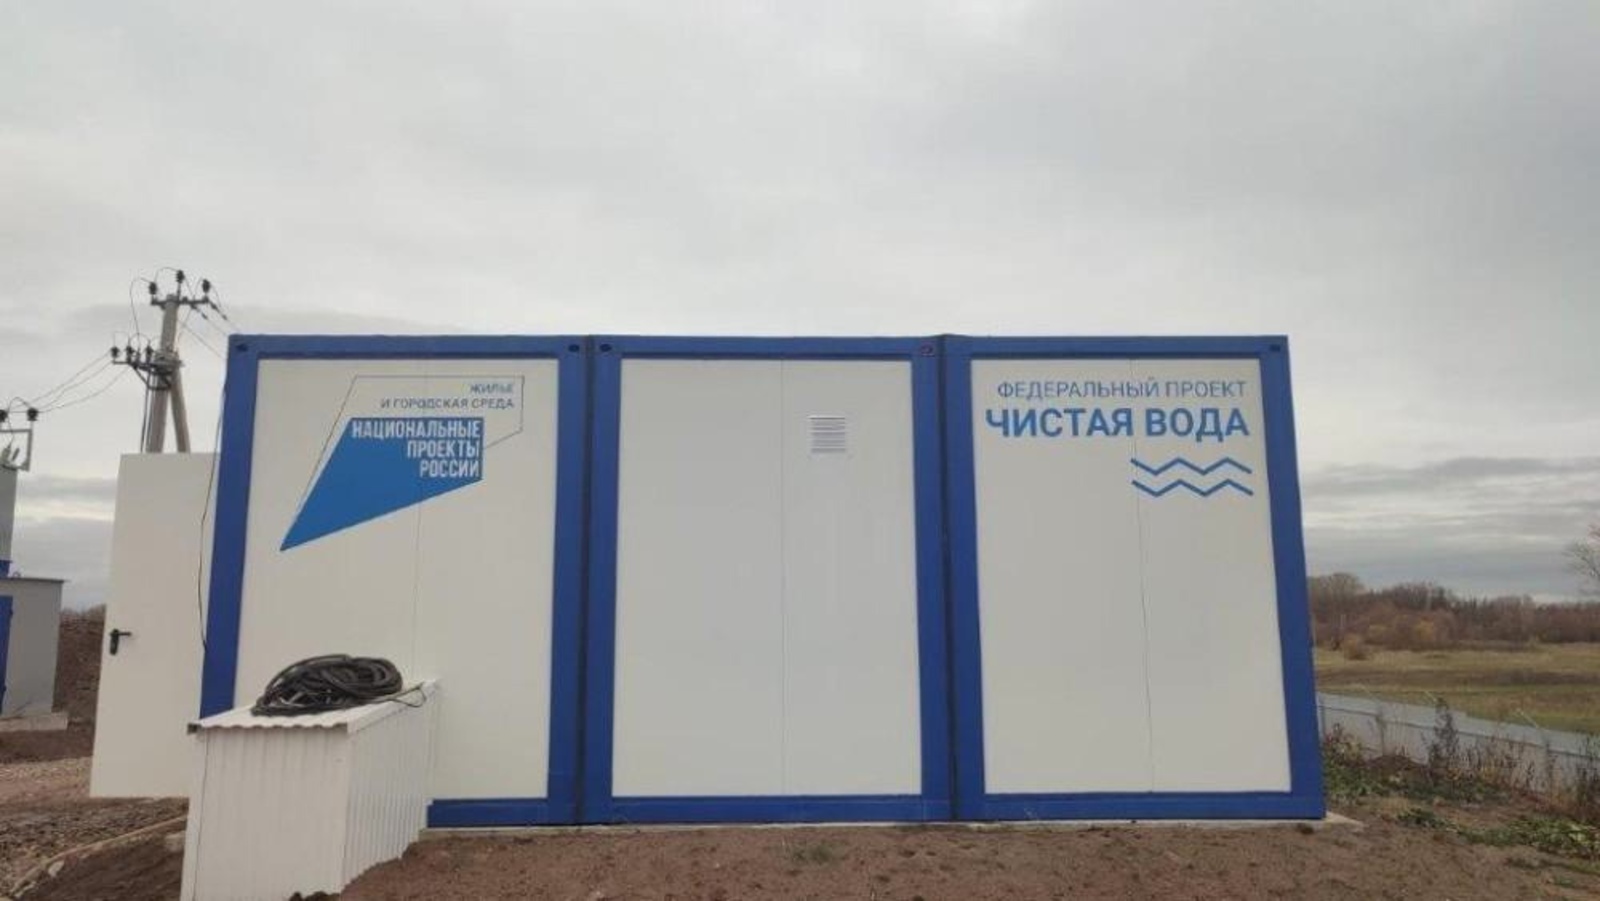 В Башкортостане в рамках федерального проекта «Чистая вода» ведётся строительство систем водоснабжения в шести населённых пунктах